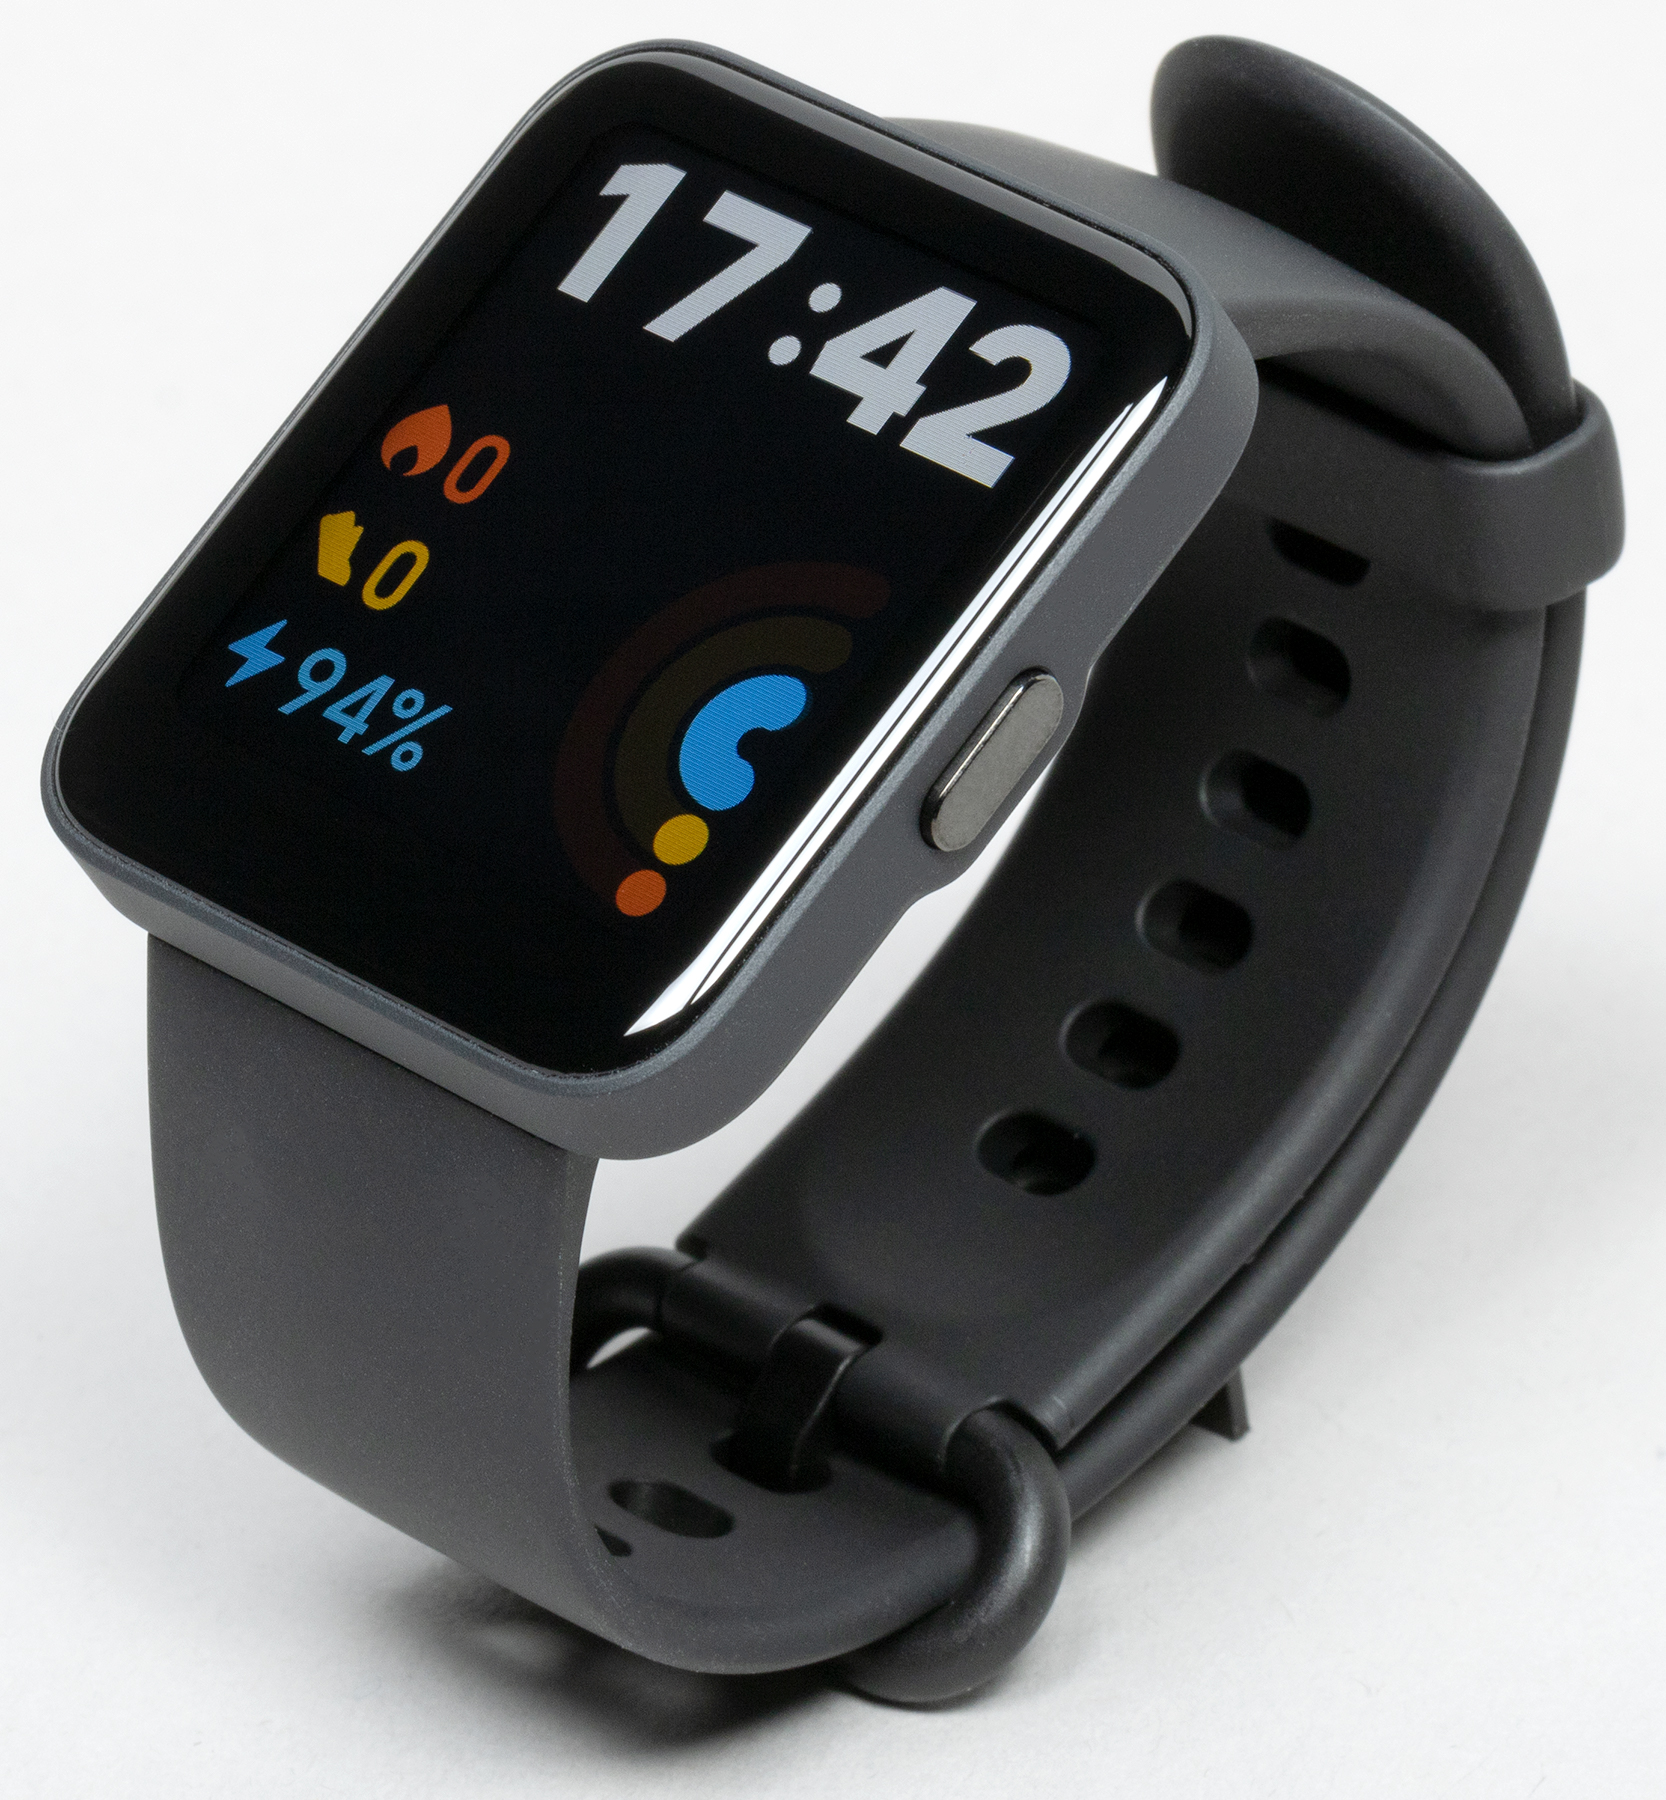 Xiaomi redmi watch 4 цены. Redmi watch 2 Lite. Часы редми вотч 2. Часы редми вотч 2 Лайт. Смарт часы Ксиаоми редми вотч.